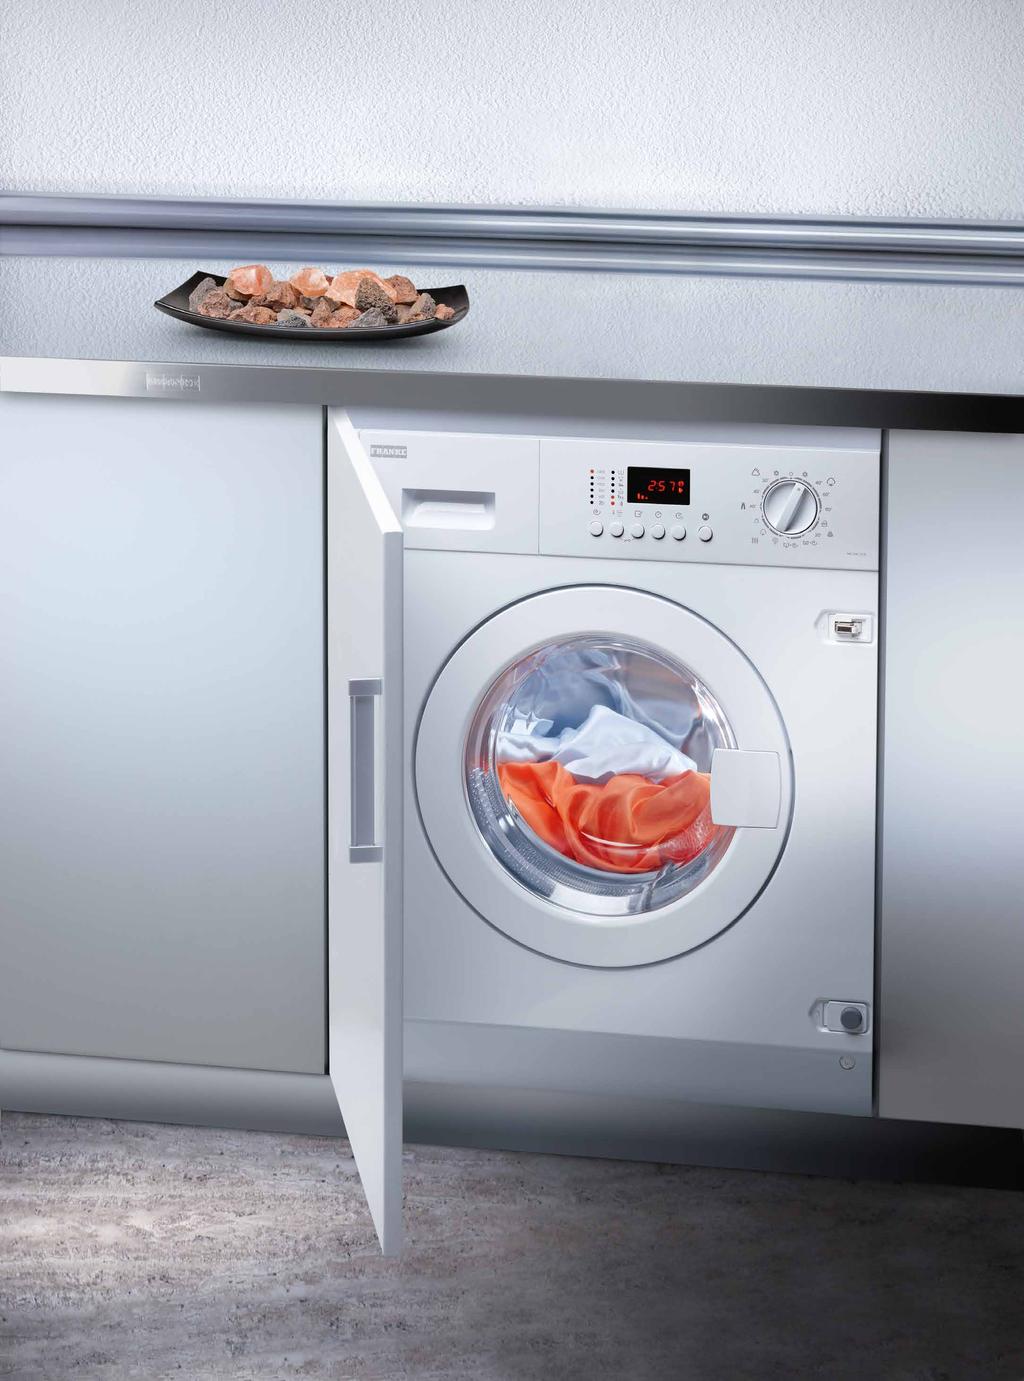 franke çamasir makineni seç Banyolar dışında mutfakda da kullanıma imkan sağlayan ankastre çamaşır makineleri yanında geniş yıkama kapasitesi sunan solo çamaşır makineleri, sahip olduğu özel yıkama